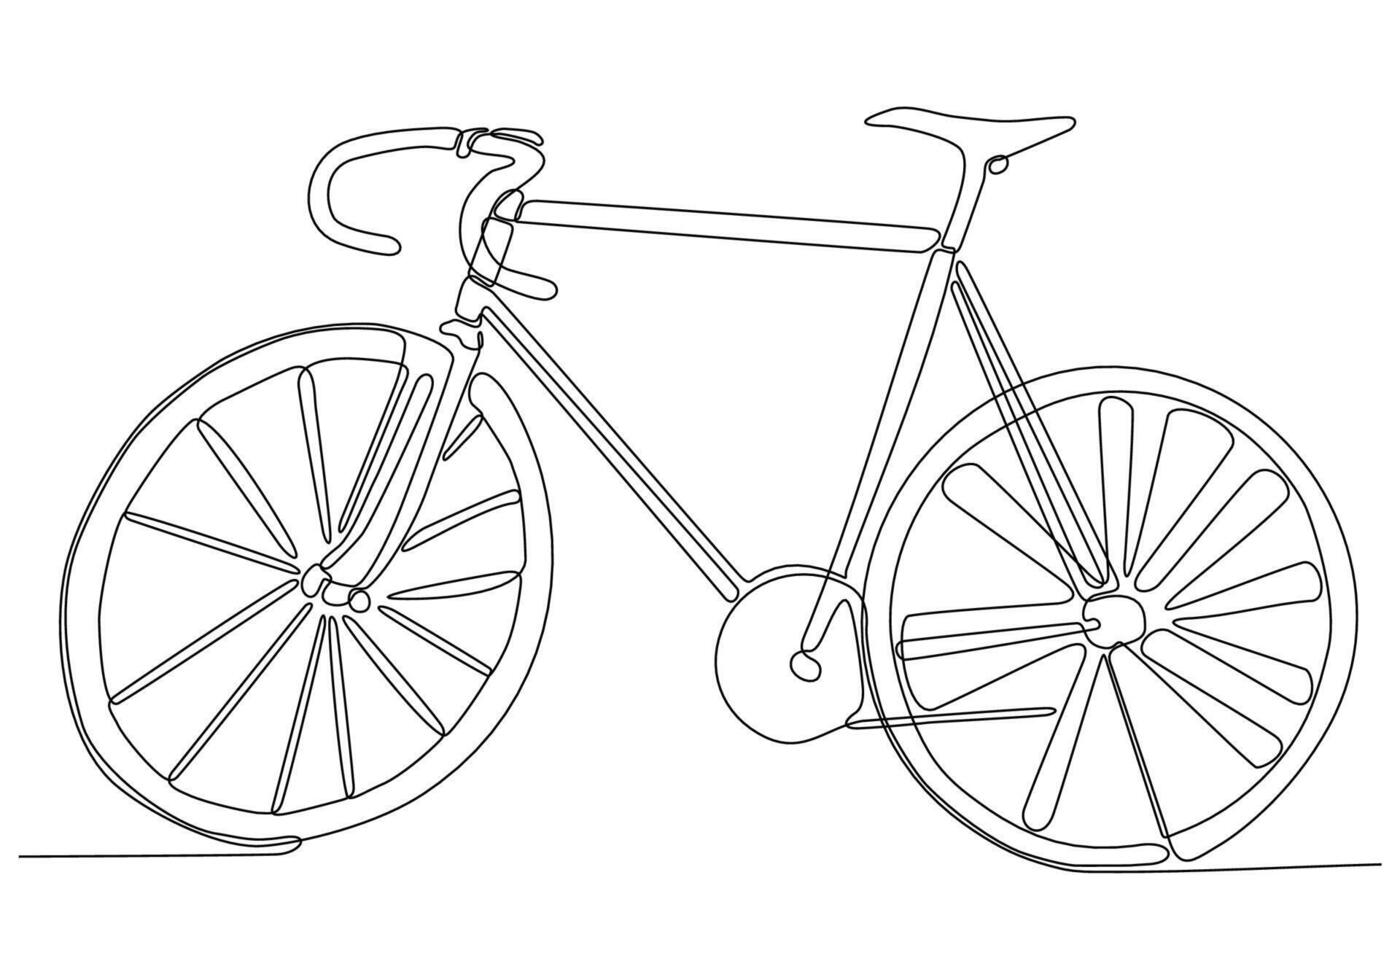 disegno a una linea o grafica a linea continua di una classica illustrazione vettoriale di biciclette. schizzo disegnato a mano del tradizionale concetto di business della bicicletta da trasporto. stile di vita sano e minimalista